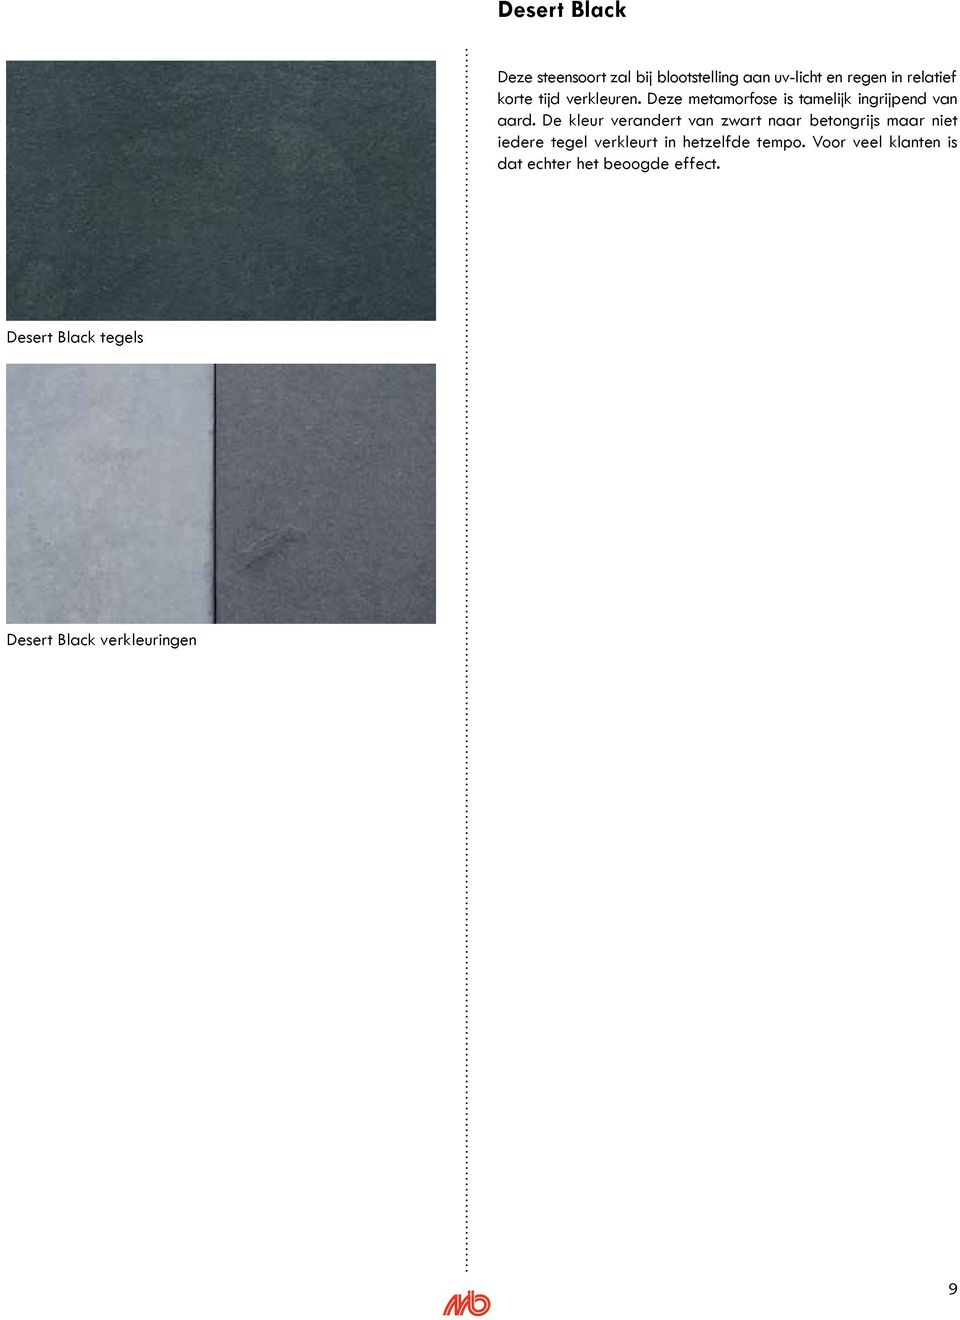 De kleur verandert van zwart naar betongrijs maar niet iedere tegel verkleurt in